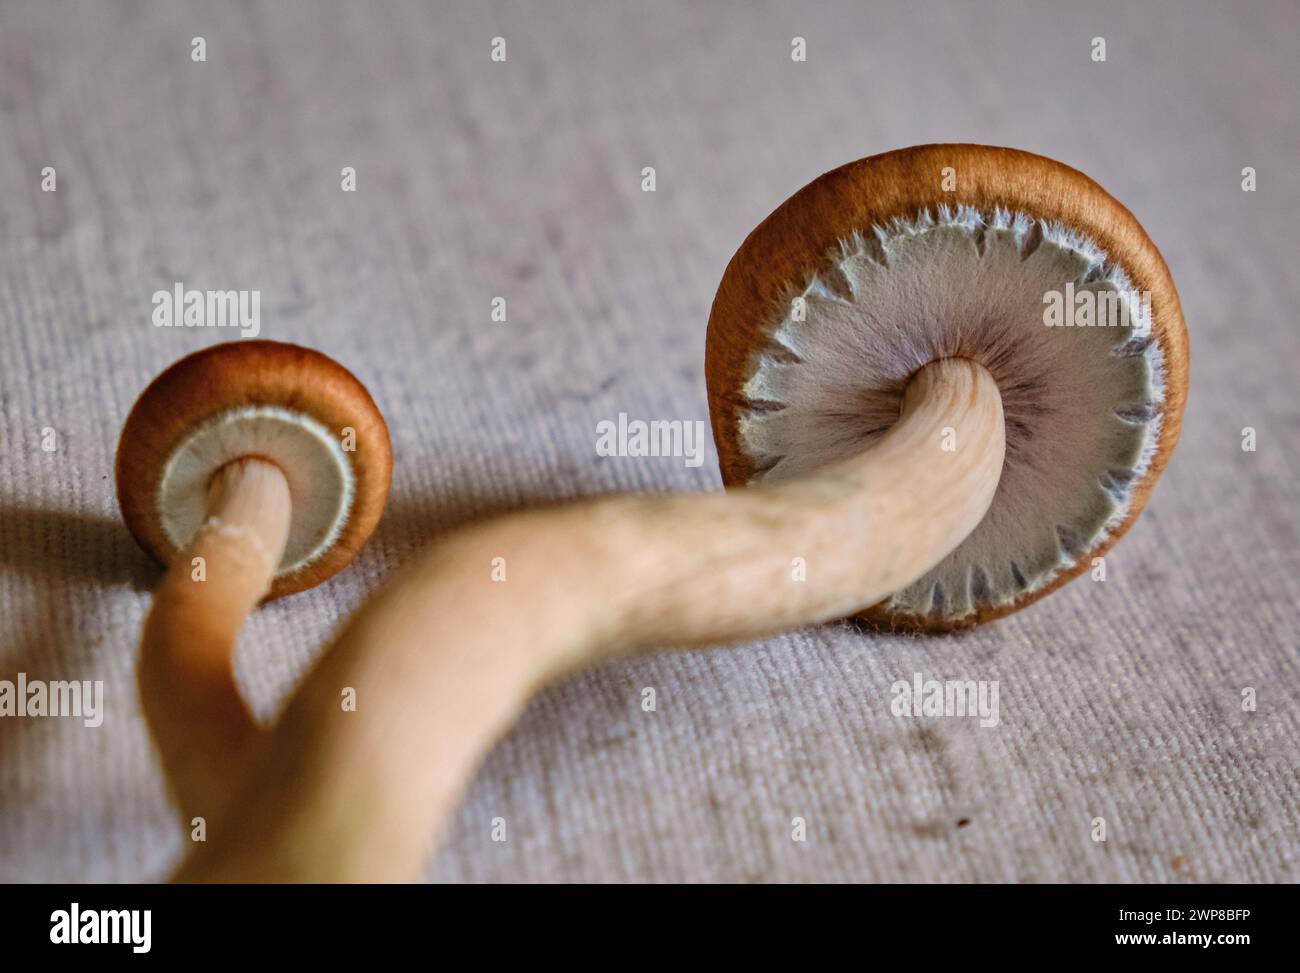 Funghi Psilocybe cubensis con velo del cappuccio intatto. Foto Stock